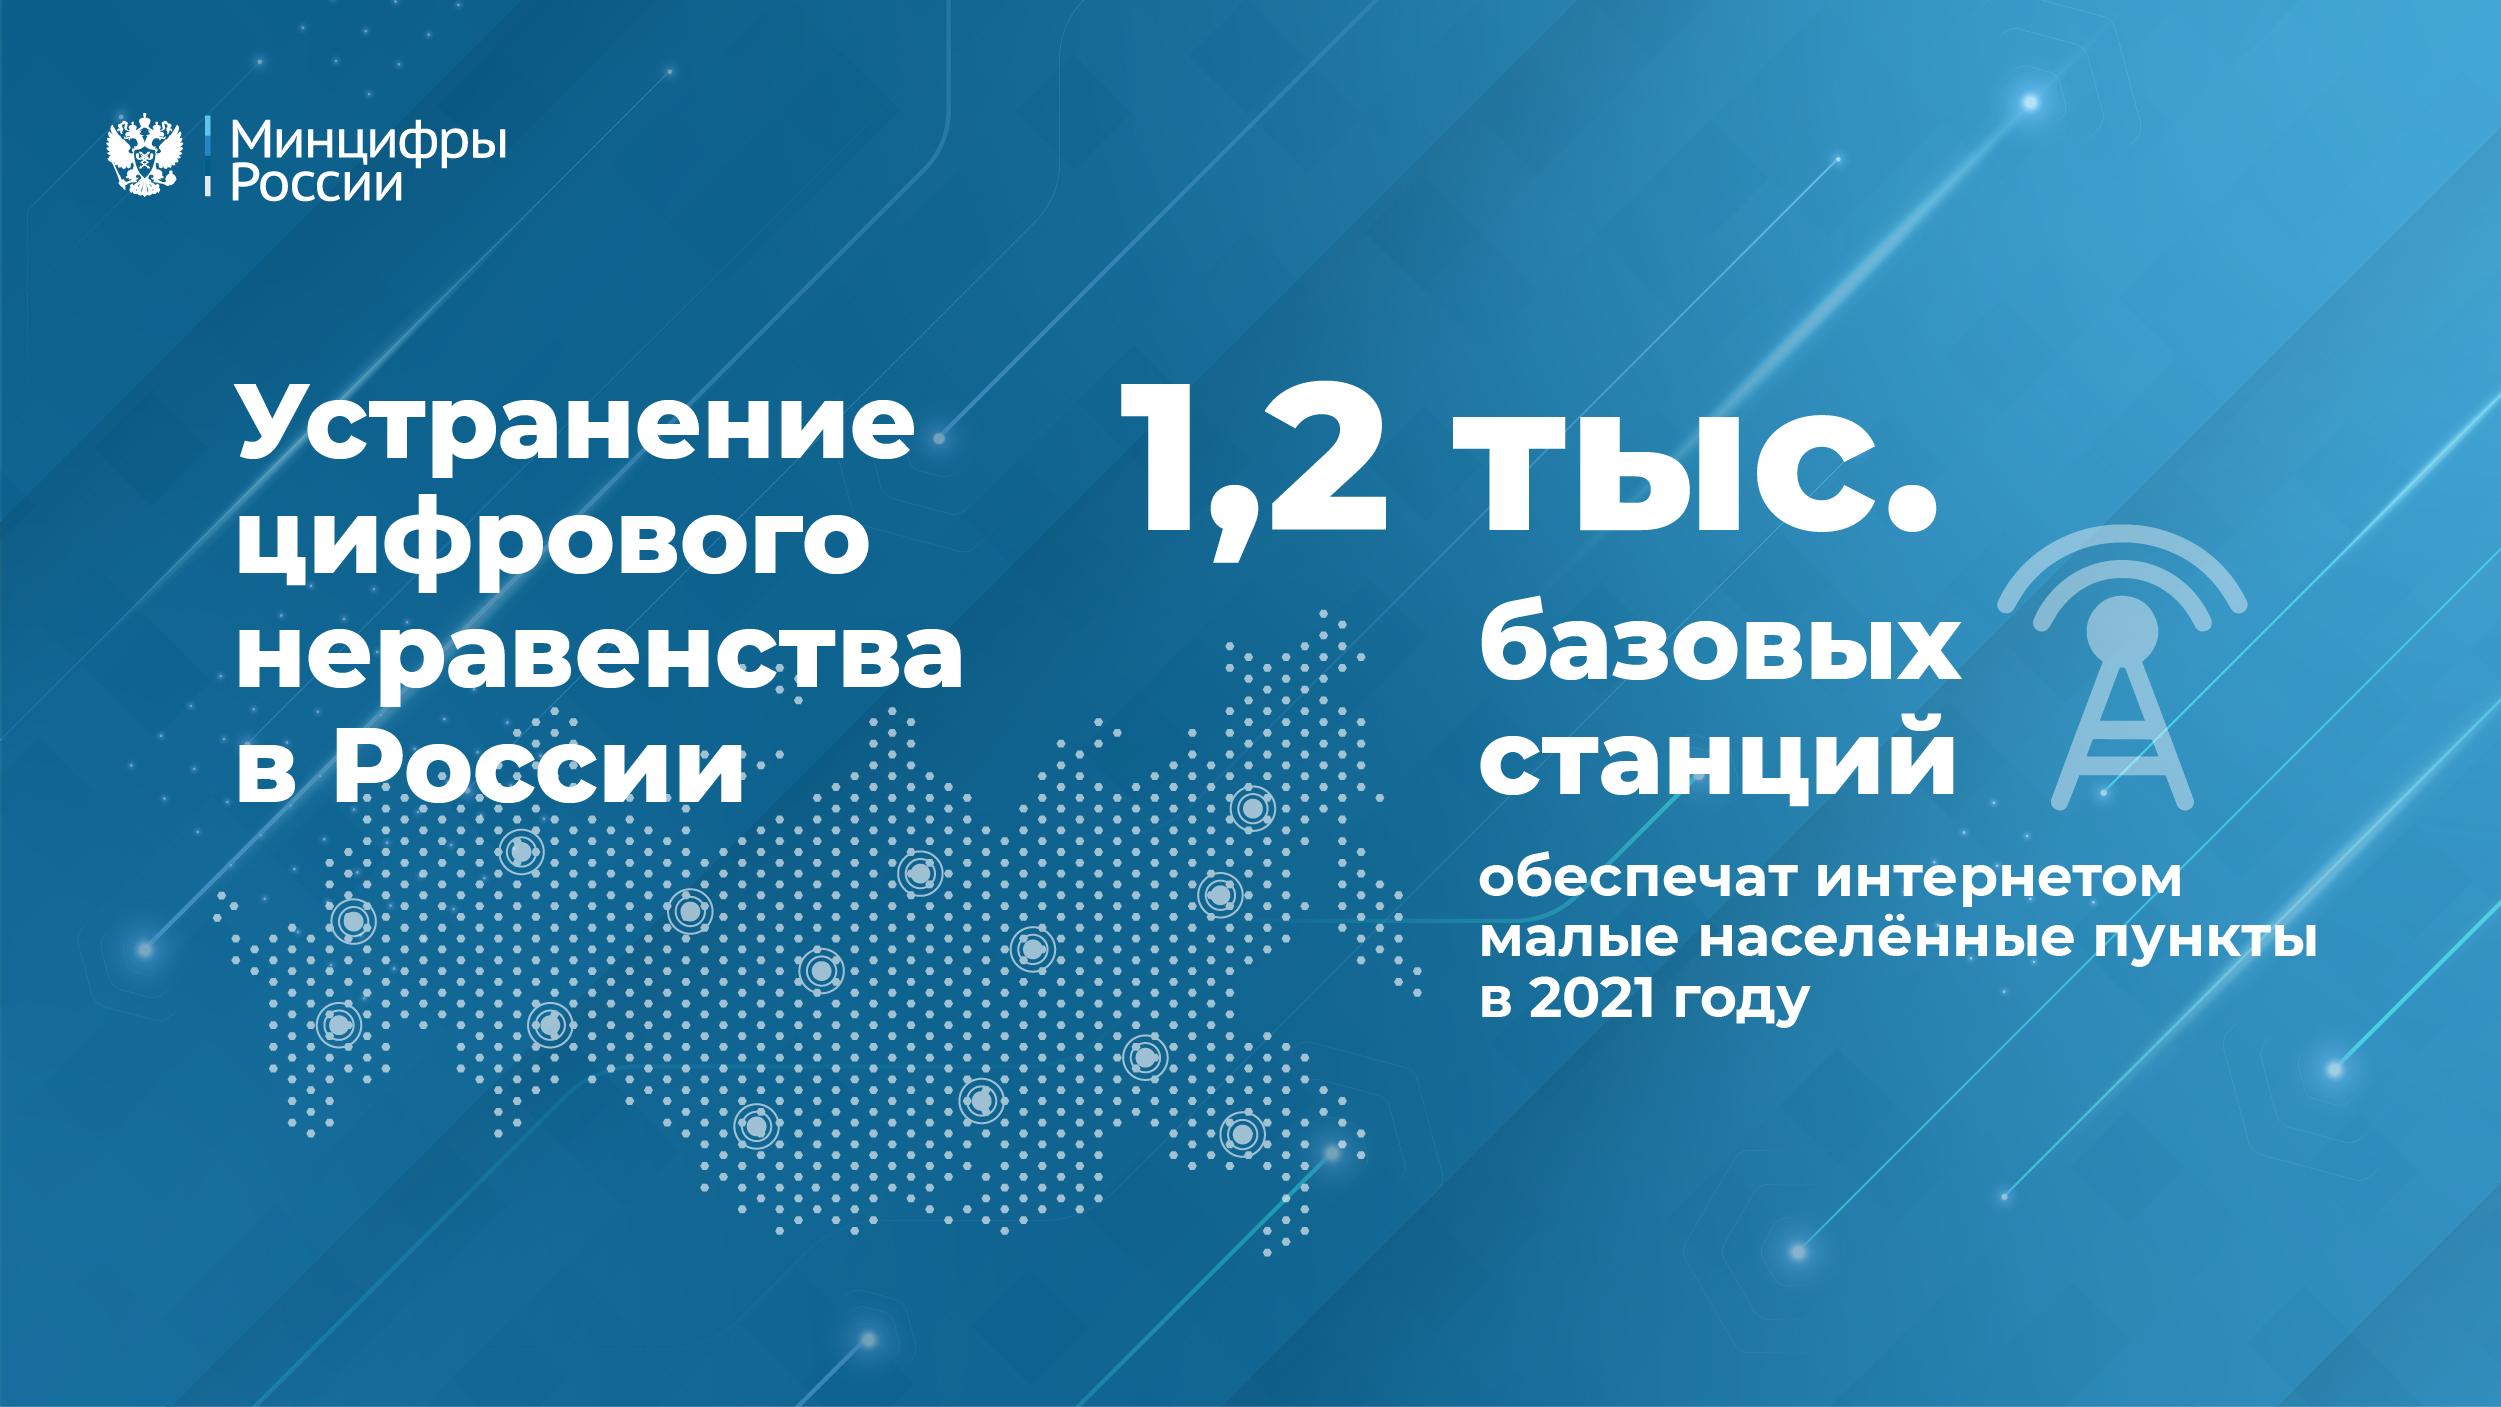 Более ста социально значимых объектов подключат к интернету в Республике Алтай в 2021 году